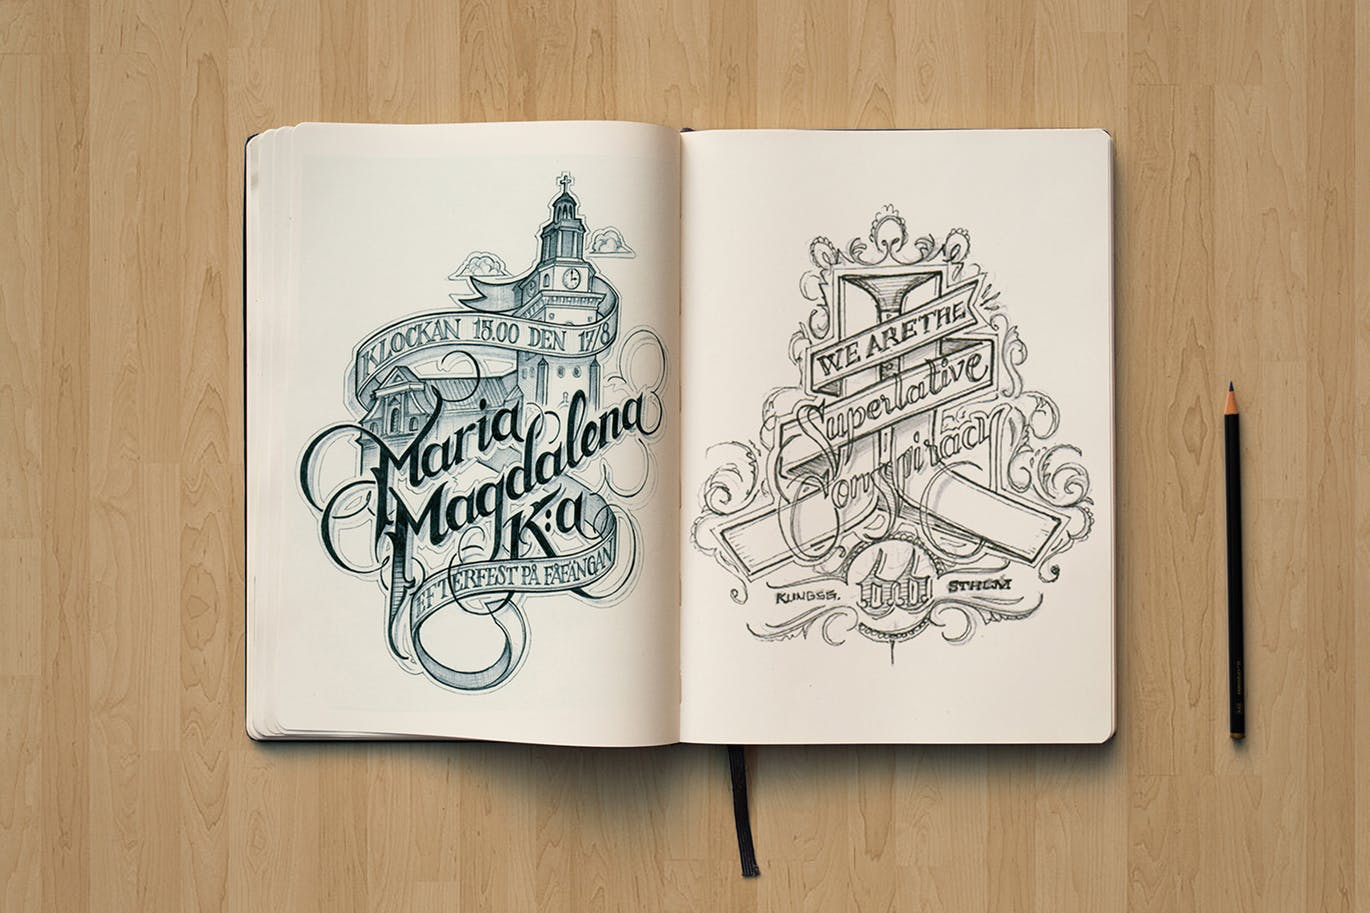 素描本内页设计/艺术作品展示顶视图样机大洋岛精选 Sketchbook Mockup Top View插图2